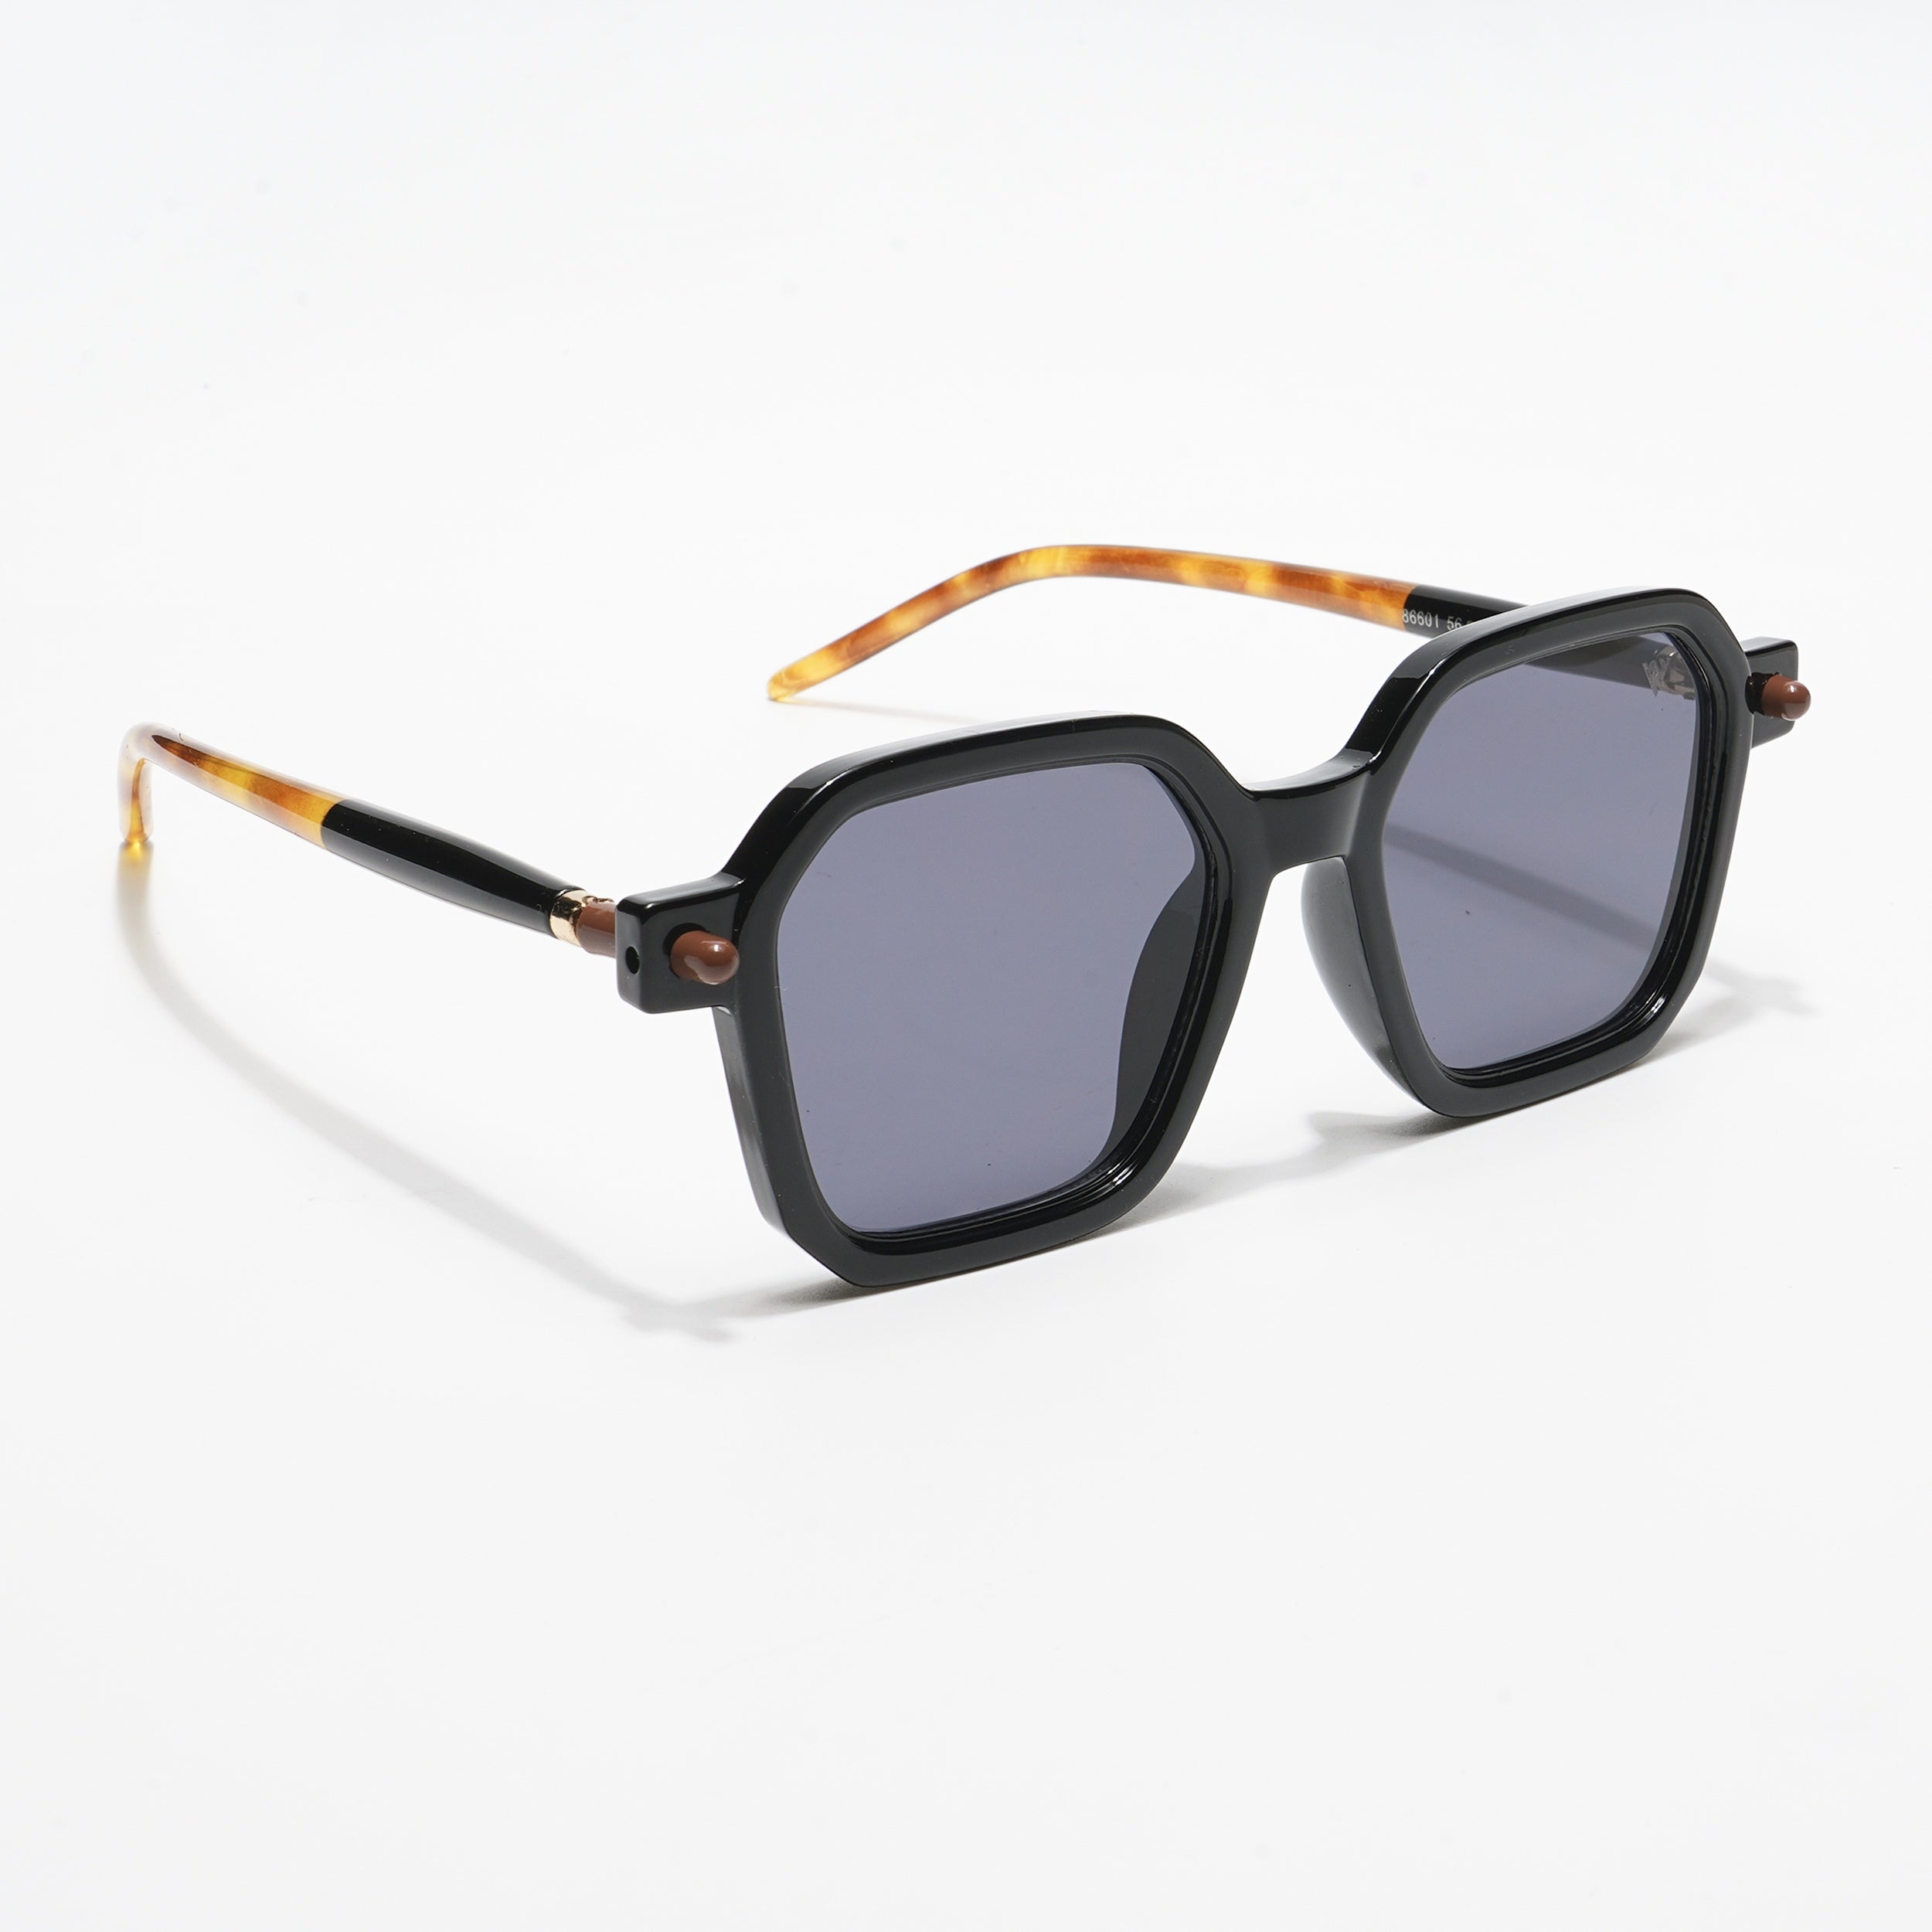 Voyage Square Sunglasses for Men & Women (Black Lens | Black Frame - MG5176)